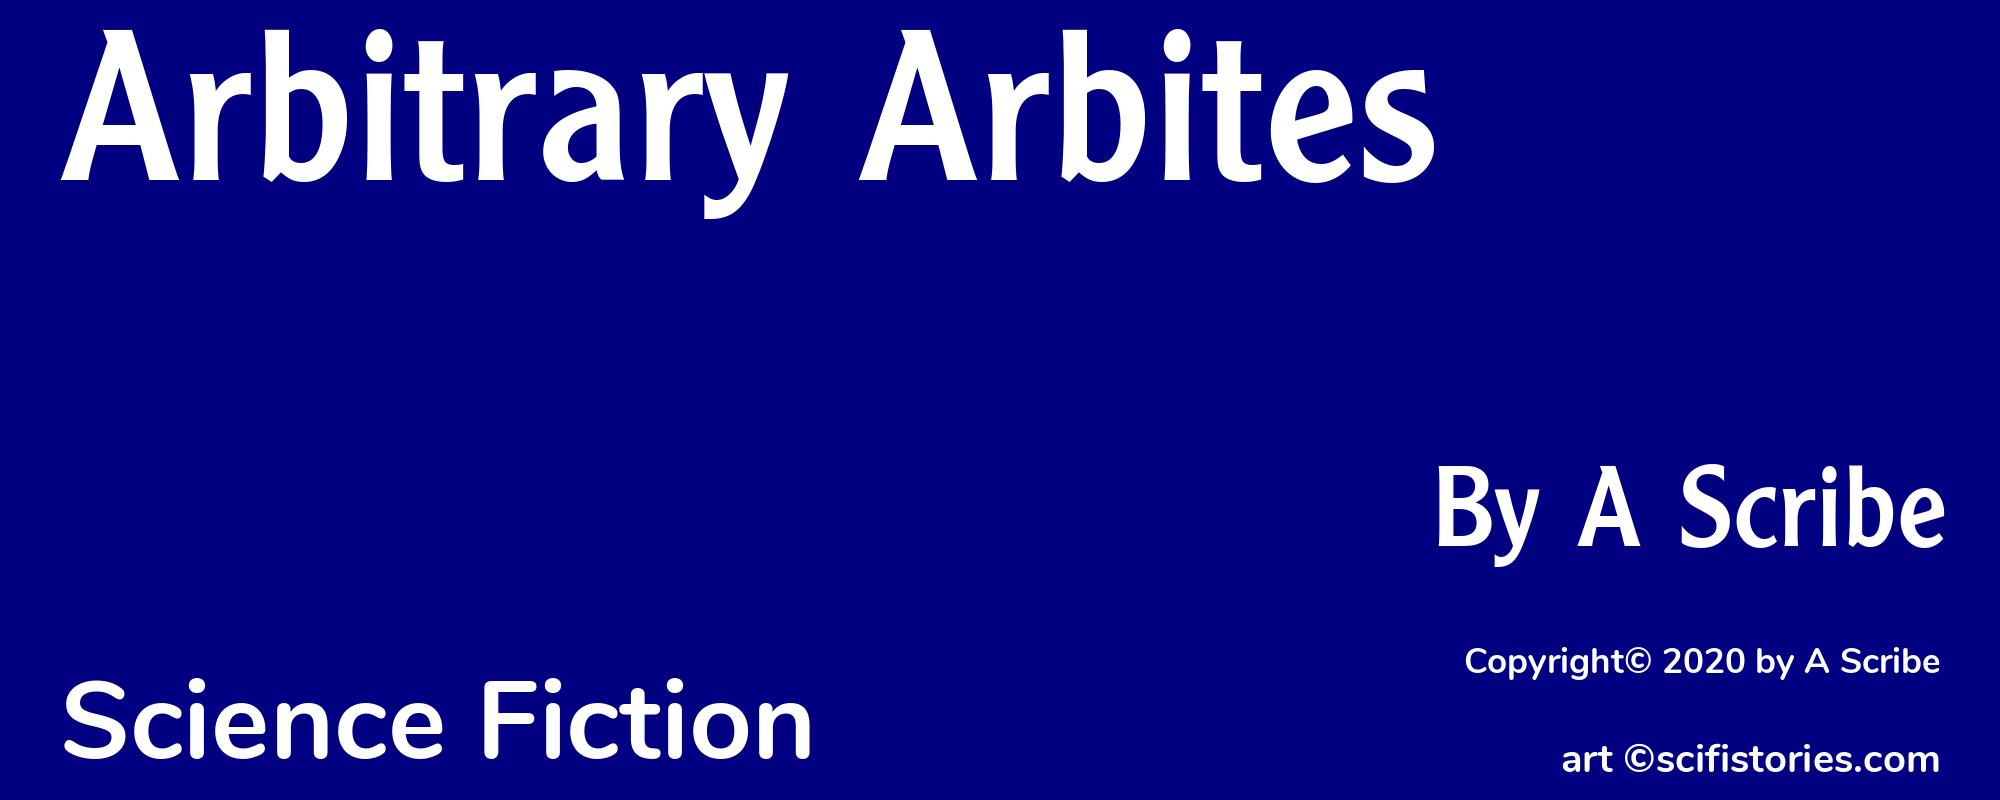 Arbitrary Arbites - Cover